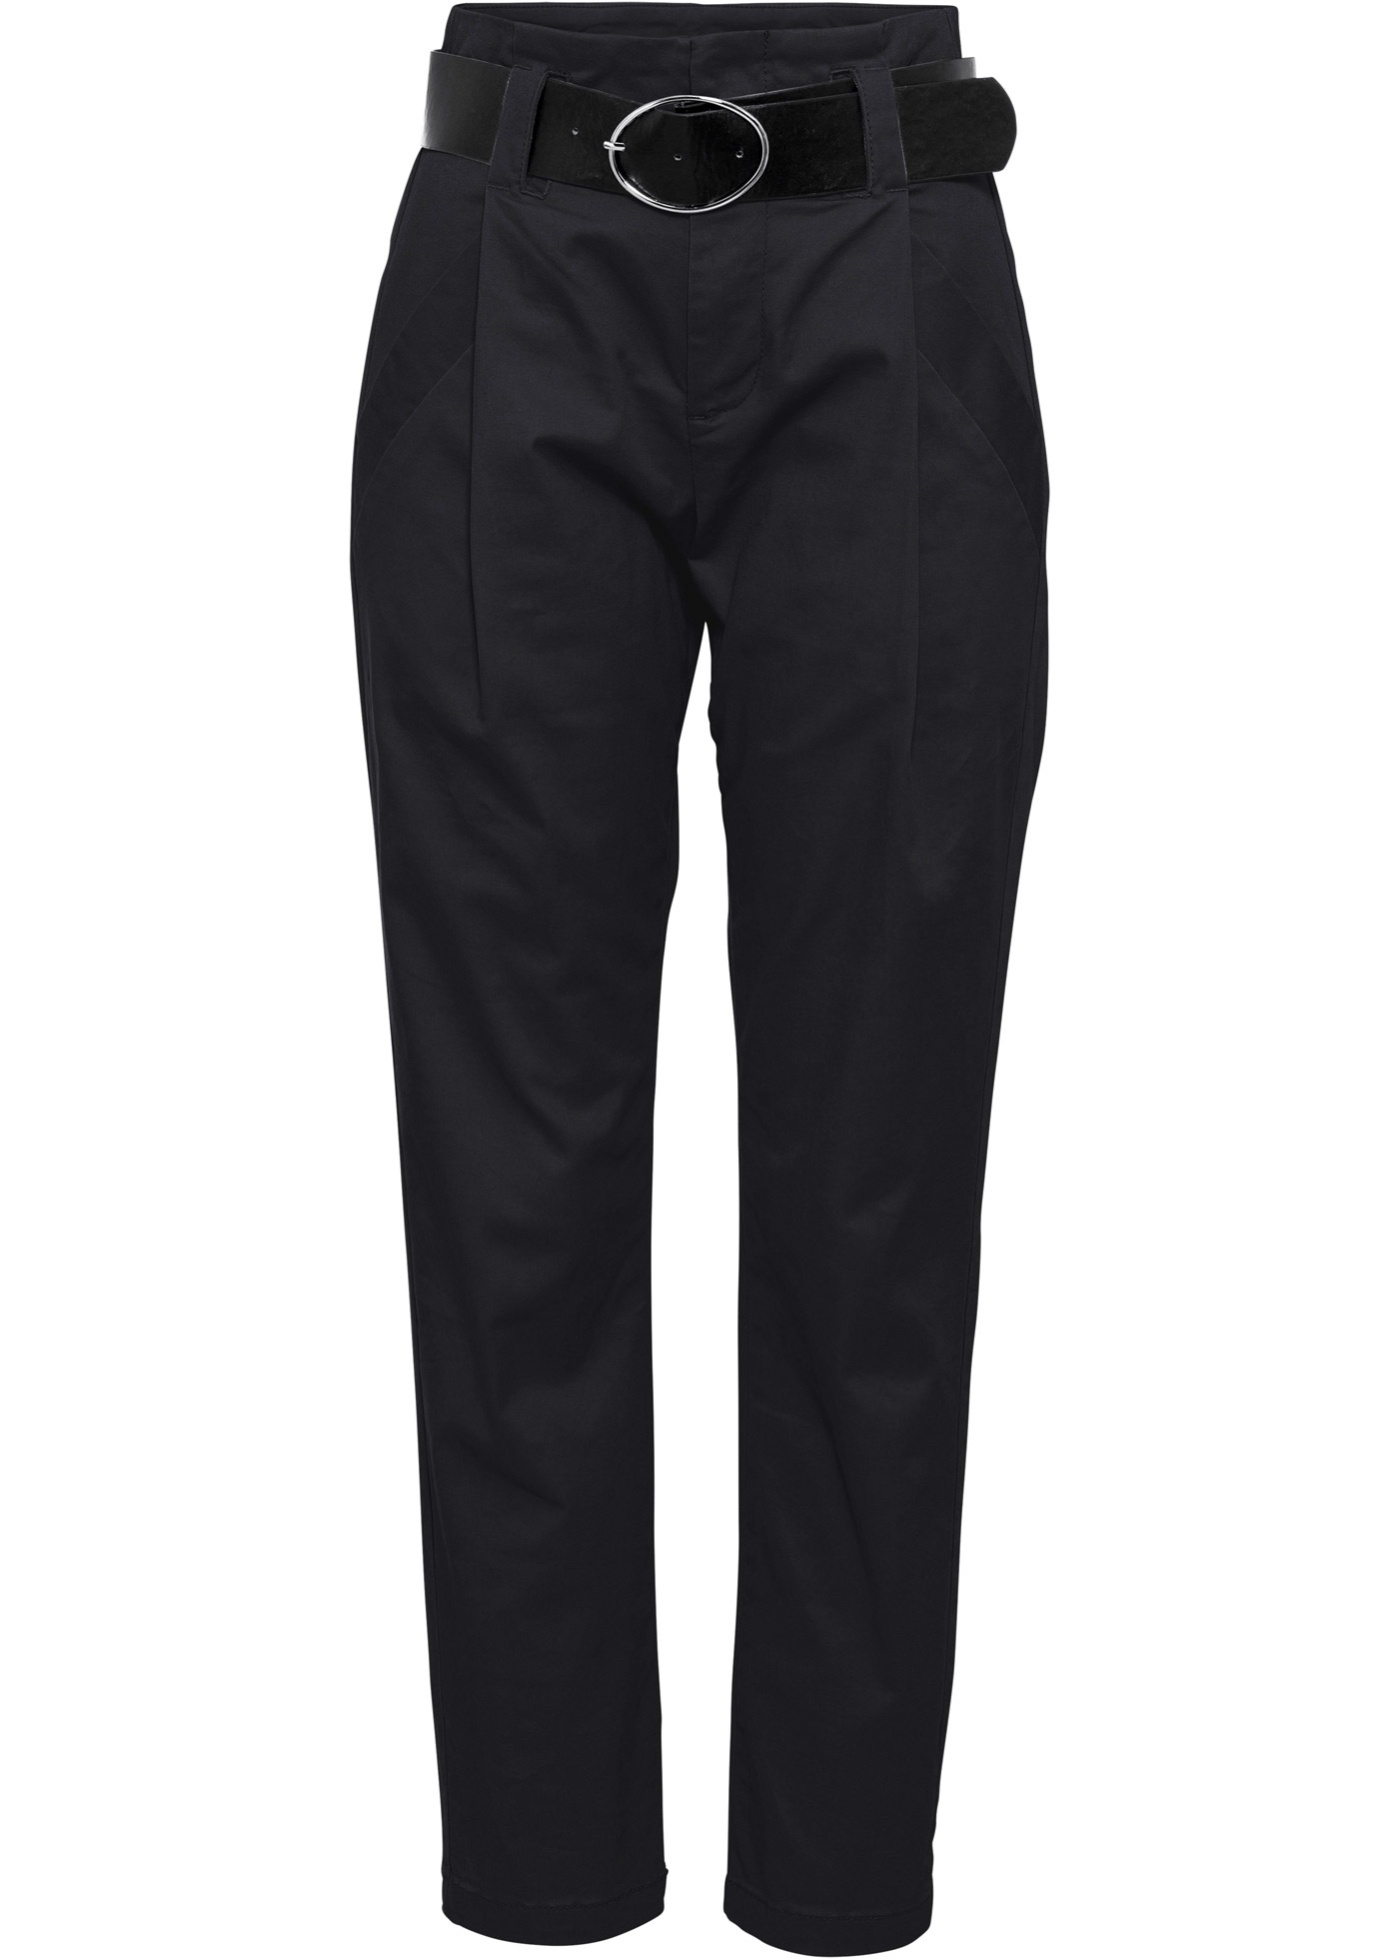 Moda Spodnie Spodnie z zakładkami cf selection Spodnie z zak\u0142adkami czarny W stylu casual 